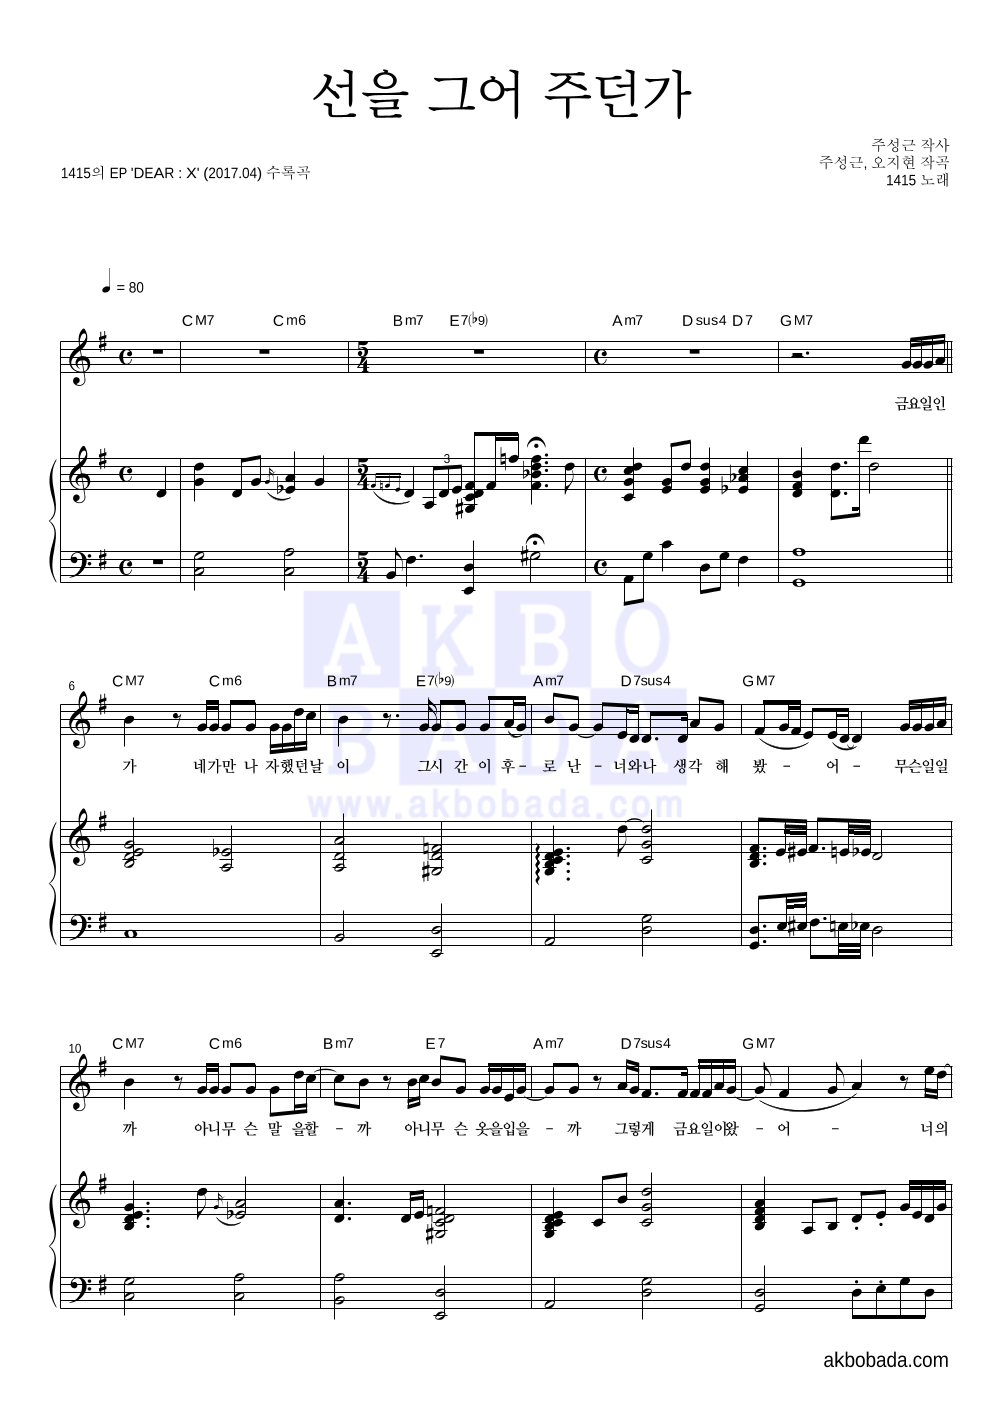 1415 - 선을 그어 주던가(Piano Ver.) 피아노 3단 악보 